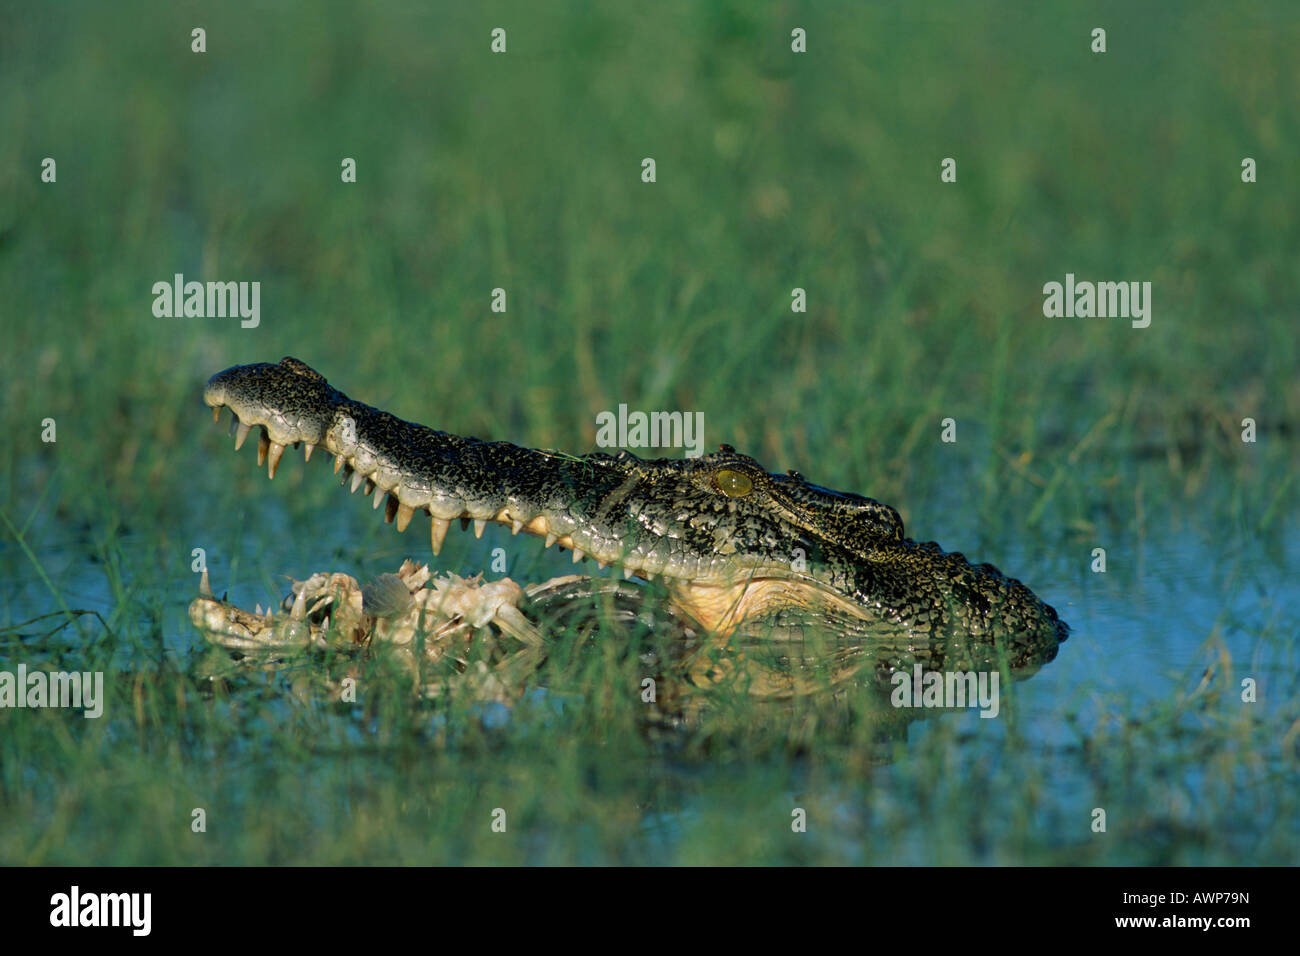 El cocodrilo de agua salada (Crocodylus porosus) comer un pez muerto, el Parque Nacional Kakadu, el Territorio del Norte, Australia, Oceanía Foto de stock